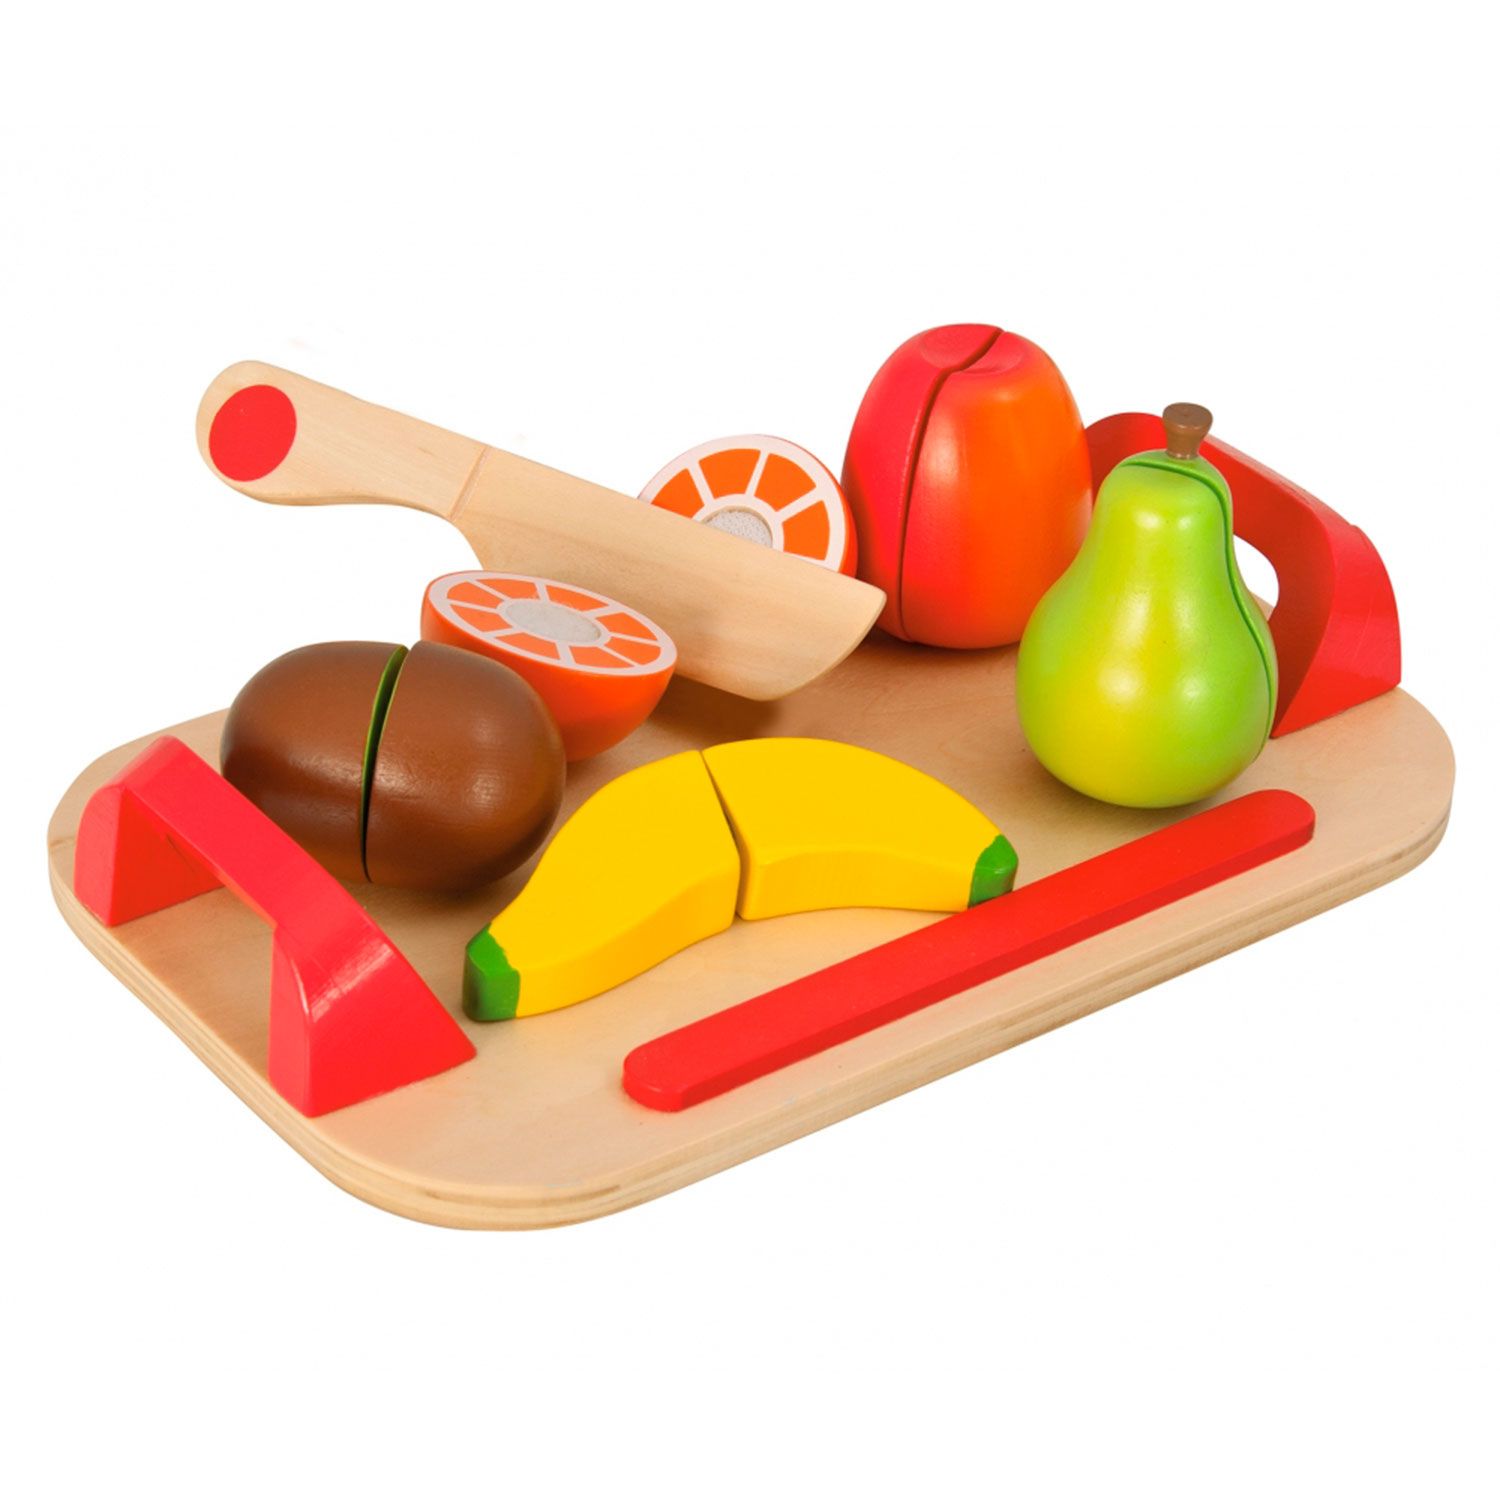 Фруктовый 12 1. Игрушечная еда. Деревянные фрукты игрушка. Игровой набор продукты из дерева. Игрушечная деревянная еда.